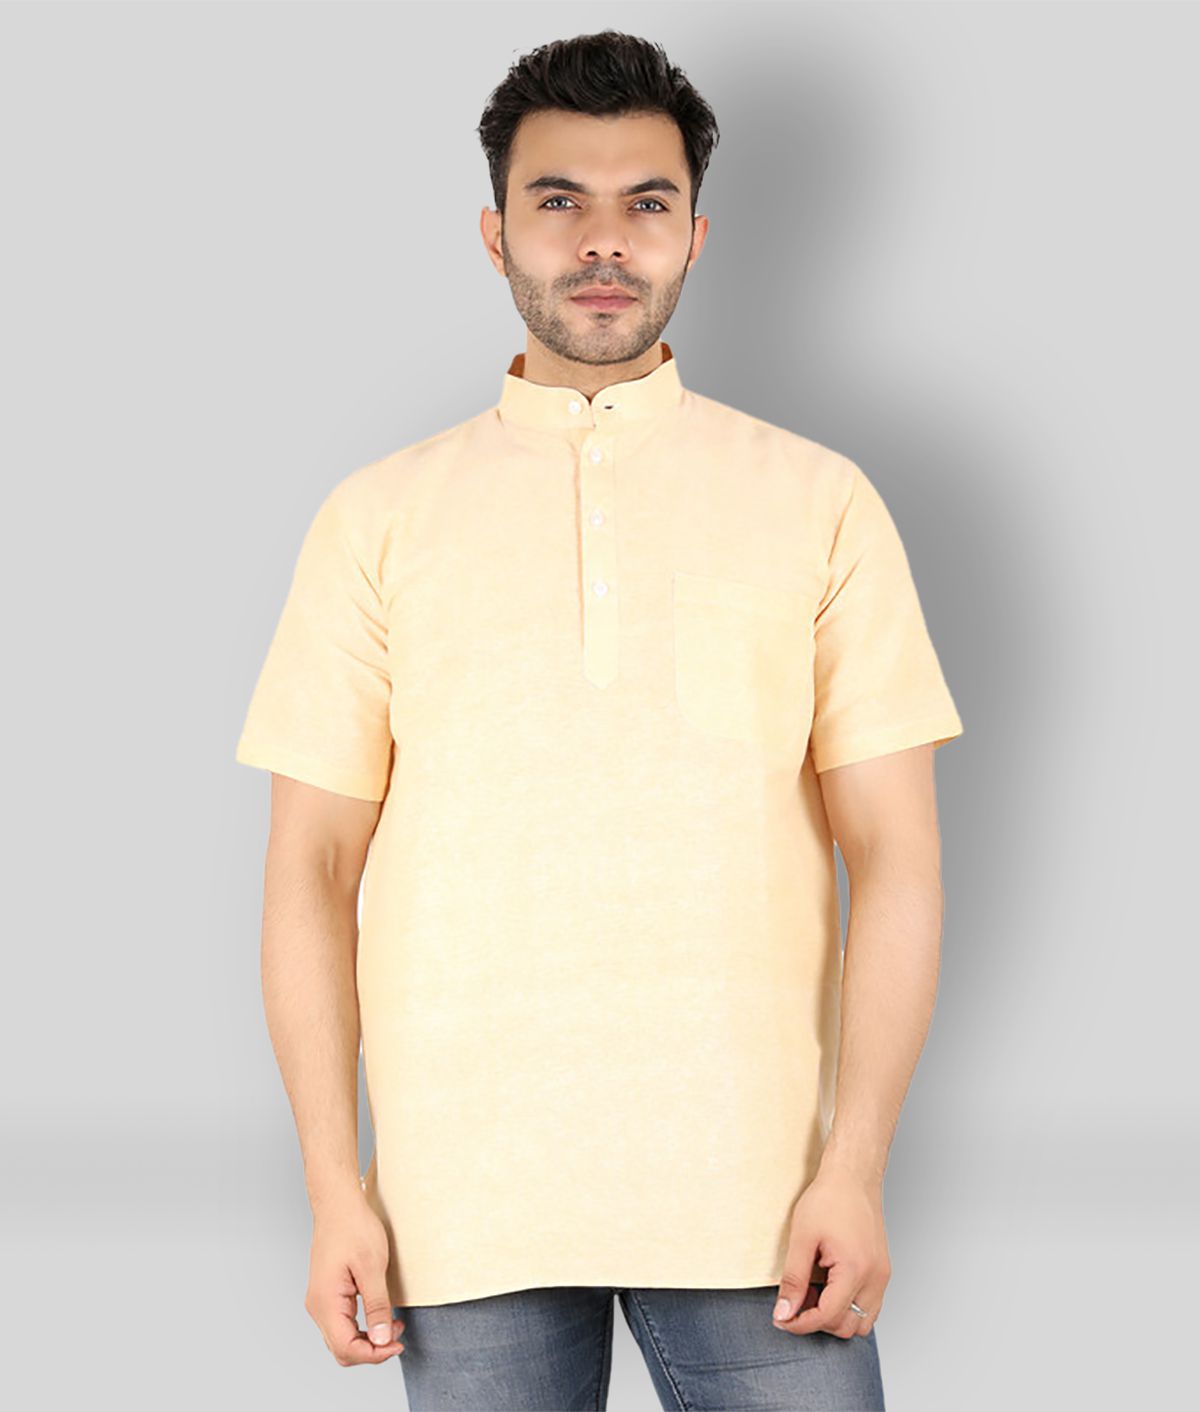     			Latest Chikan - Yellow Cotton Men's Shirt Style Kurta ( Pack of 1 )